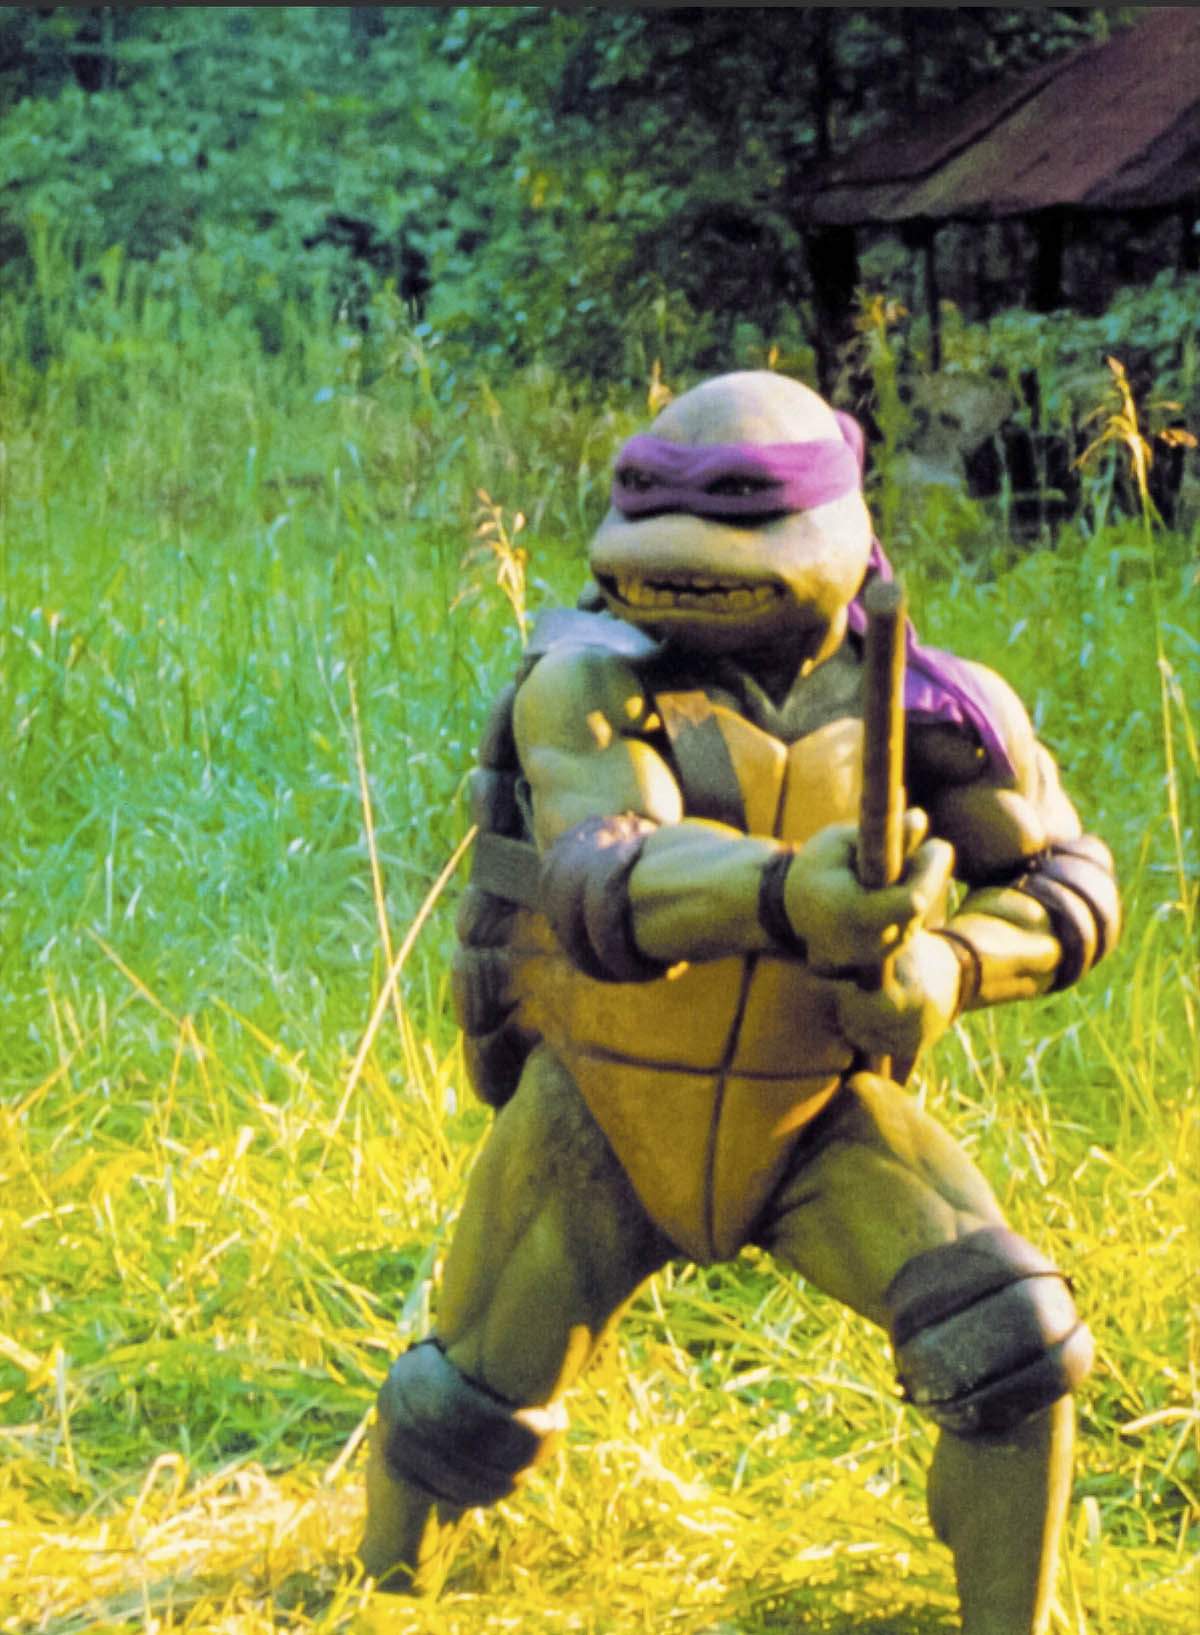 Només els homes ‘fitt’ arribaran al regne de Donatello